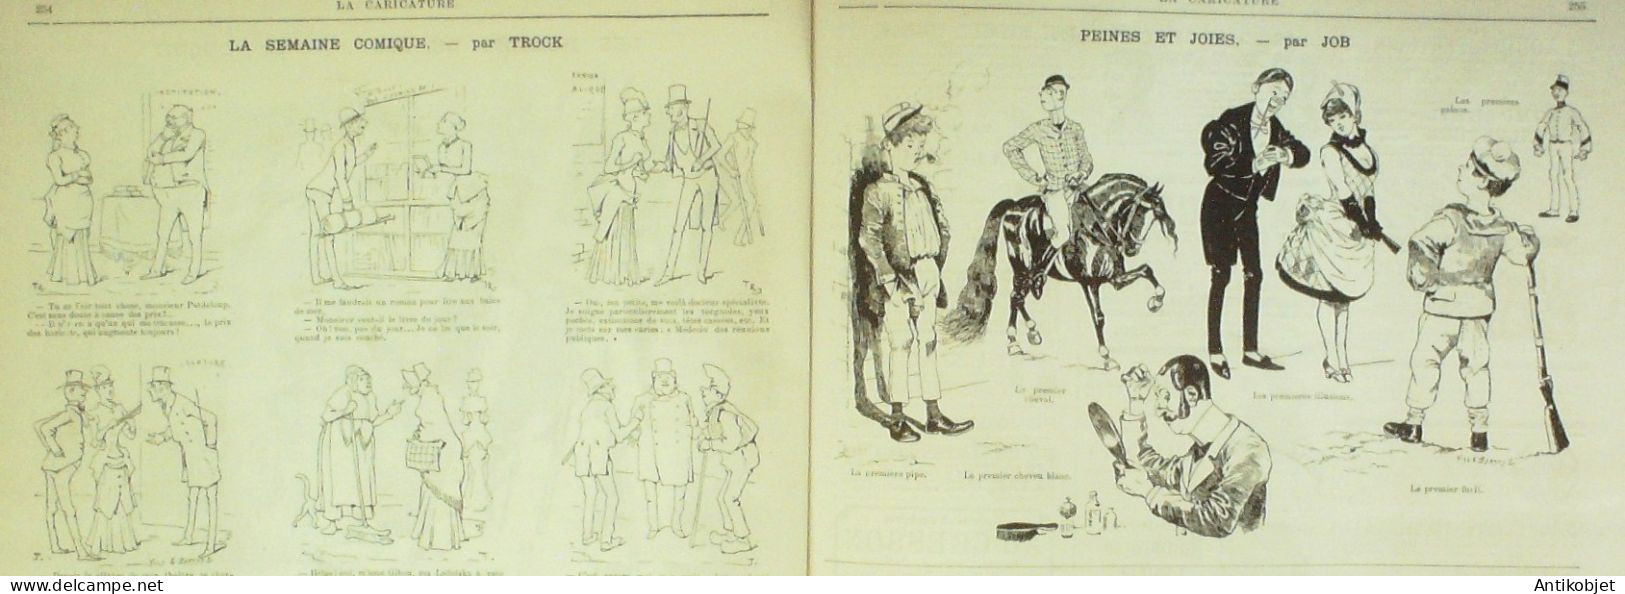 La Caricature 1884 N°240 Vie Joyeuse Job Loys Meissonier Par Luque Trock - Magazines - Before 1900